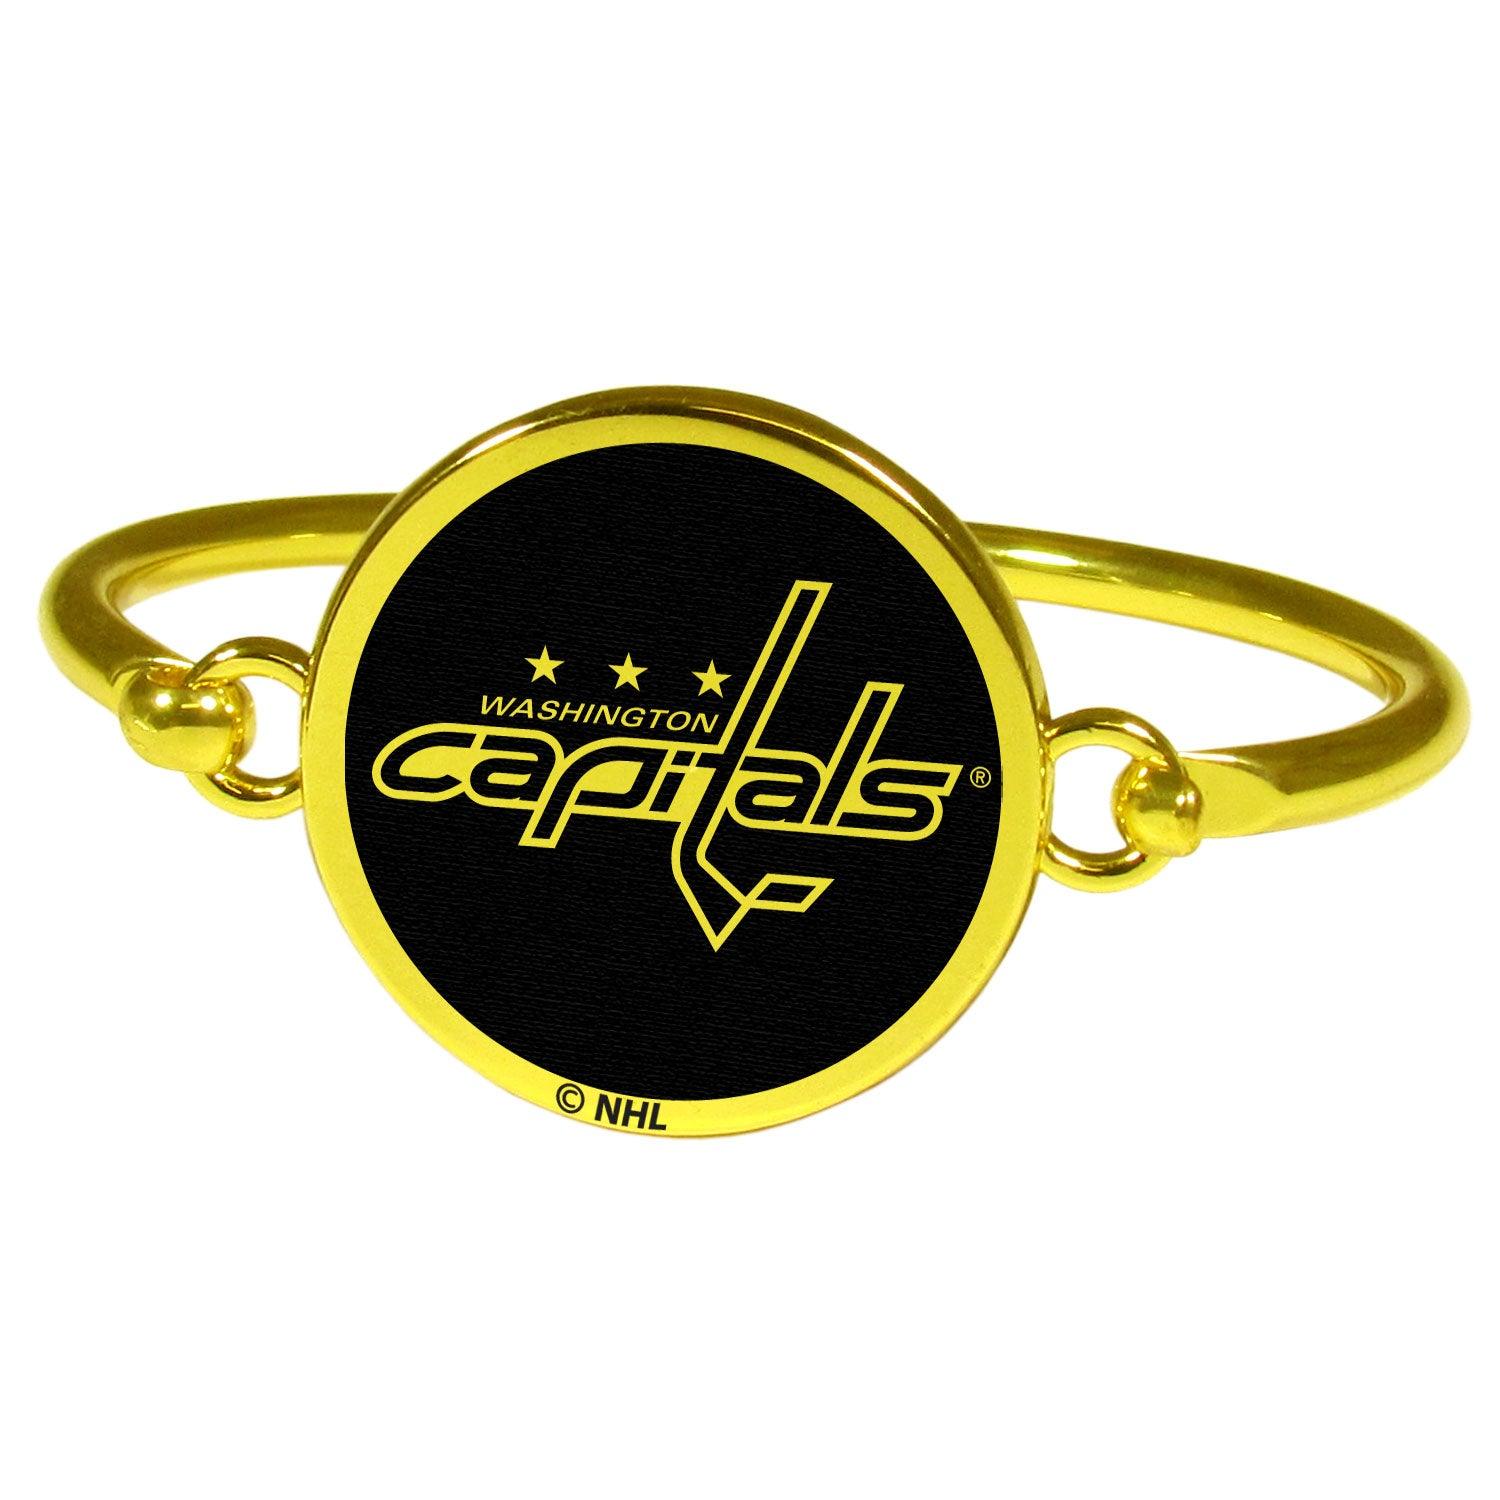 Washington Capitals® Gold Tone Bangle Bracelet - Flyclothing LLC